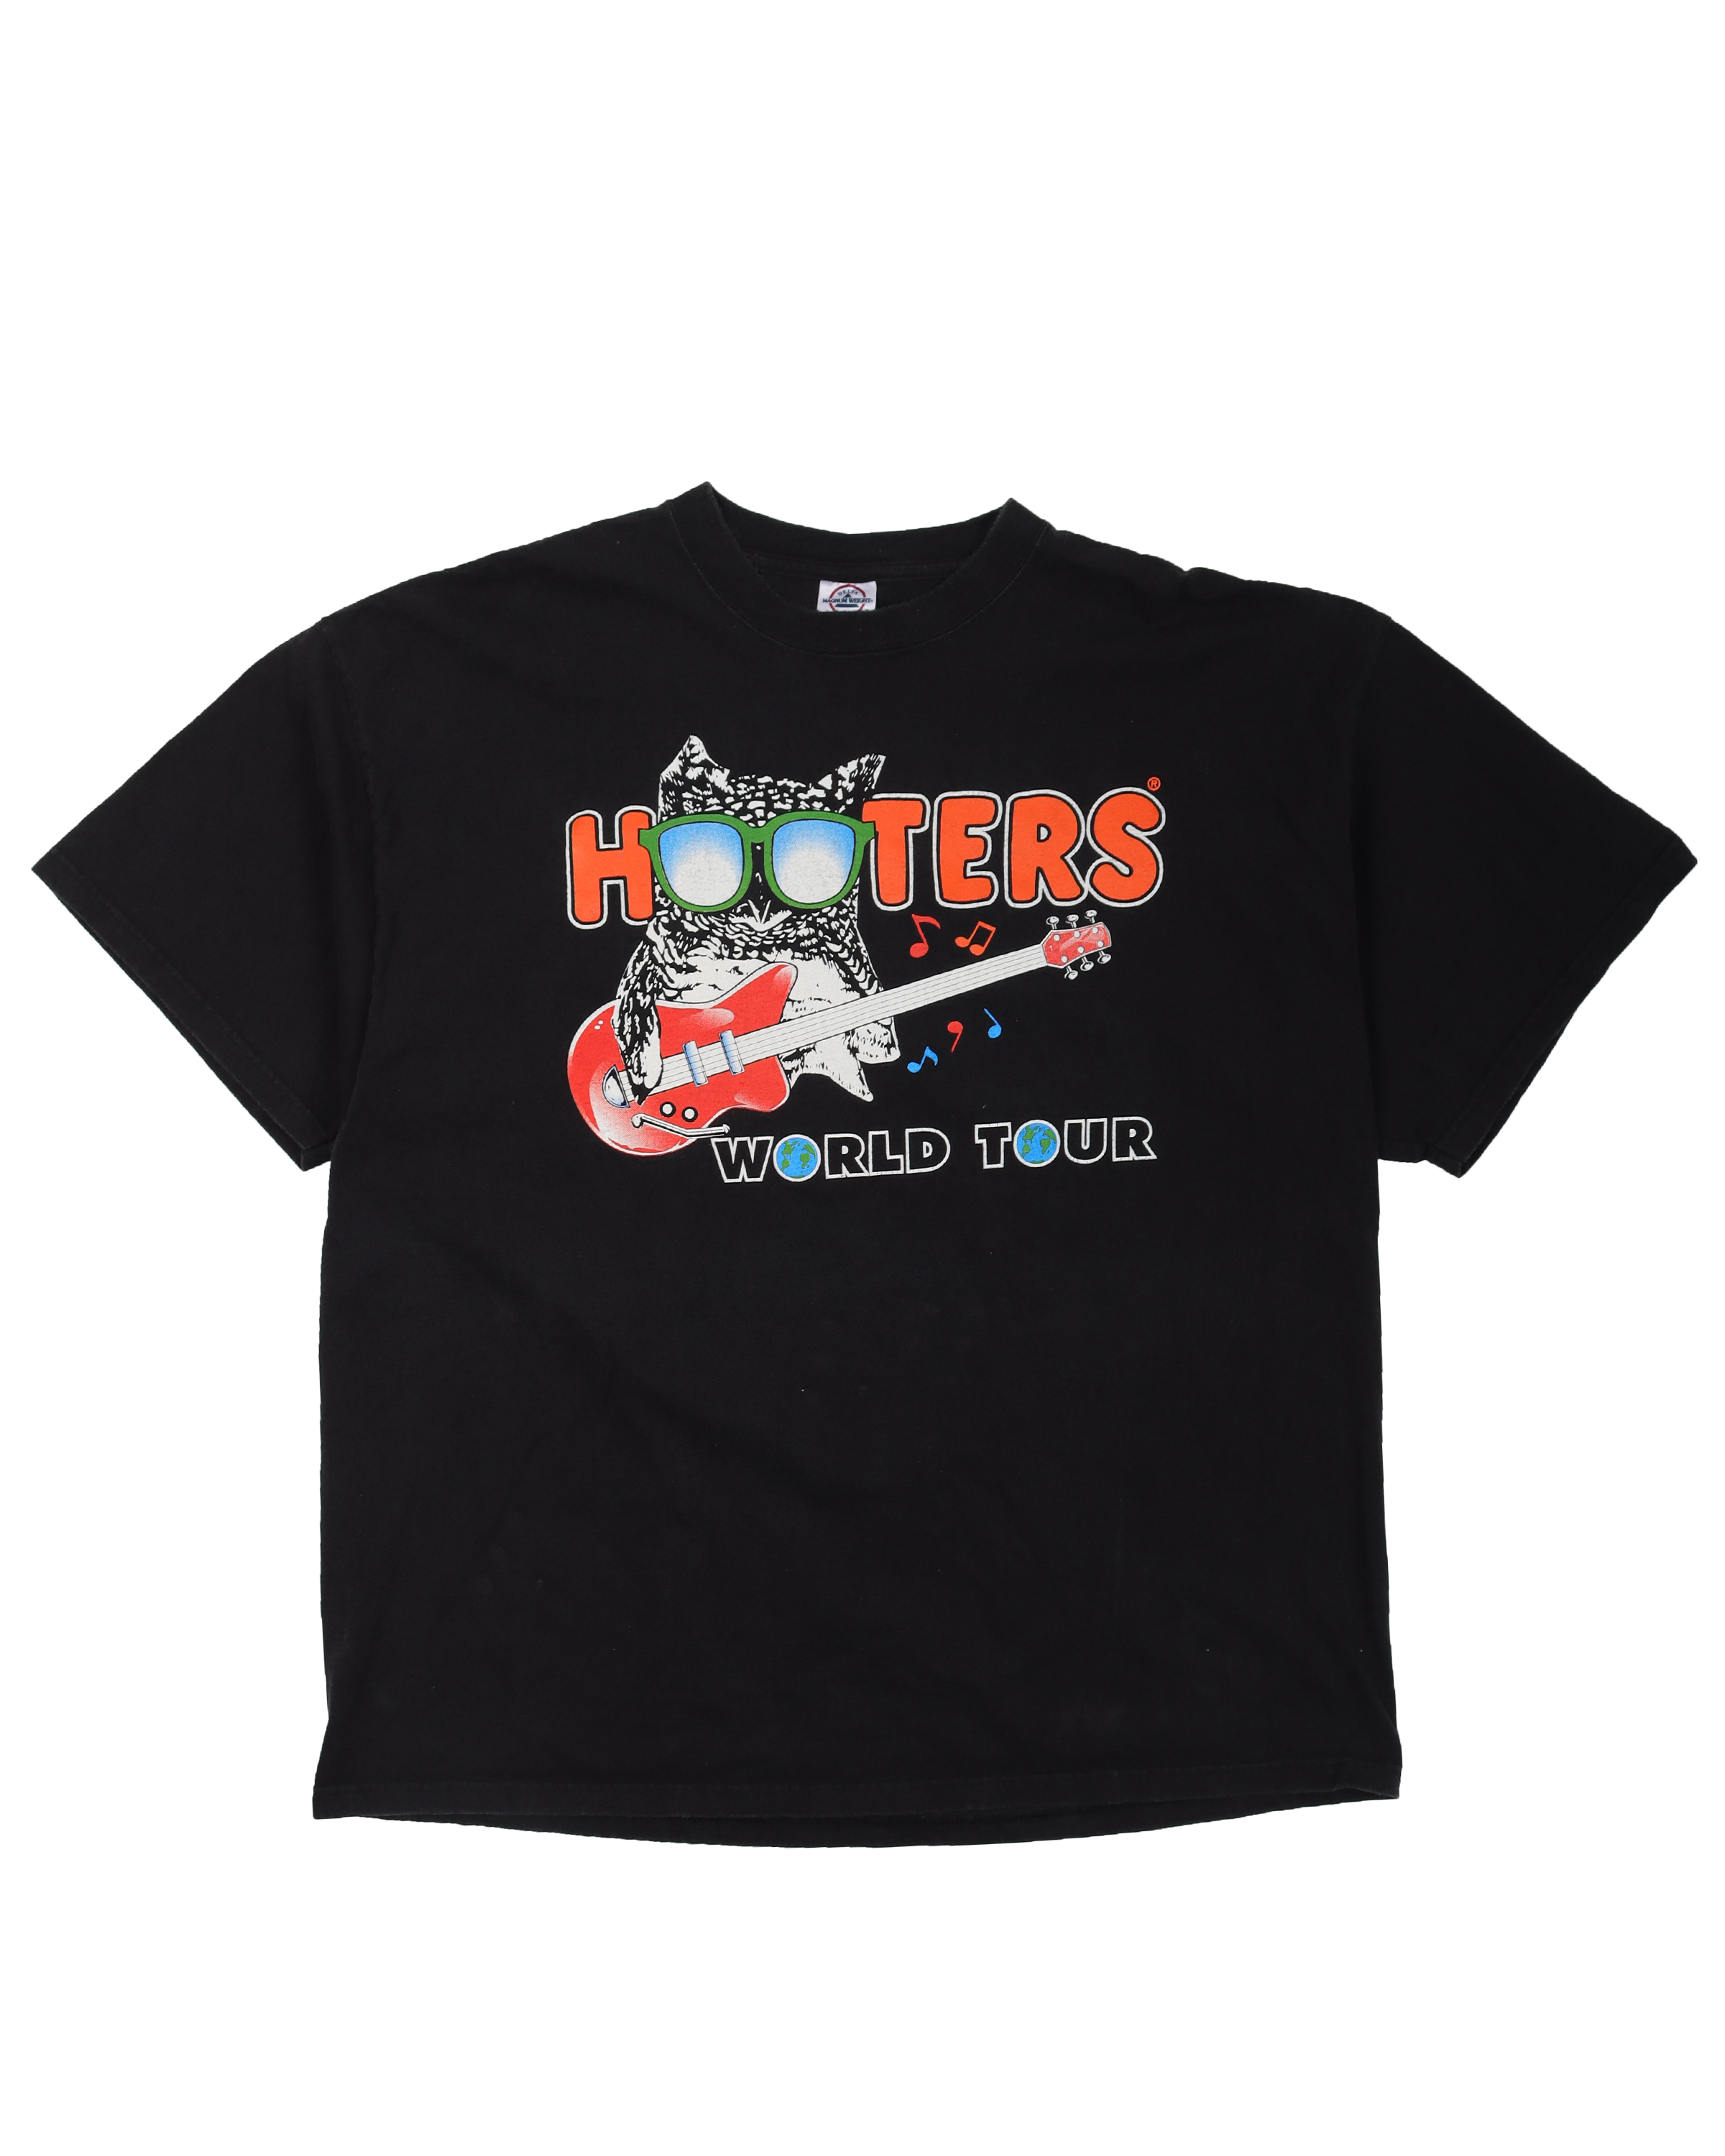 "Hooters World Tour" T-Shirt